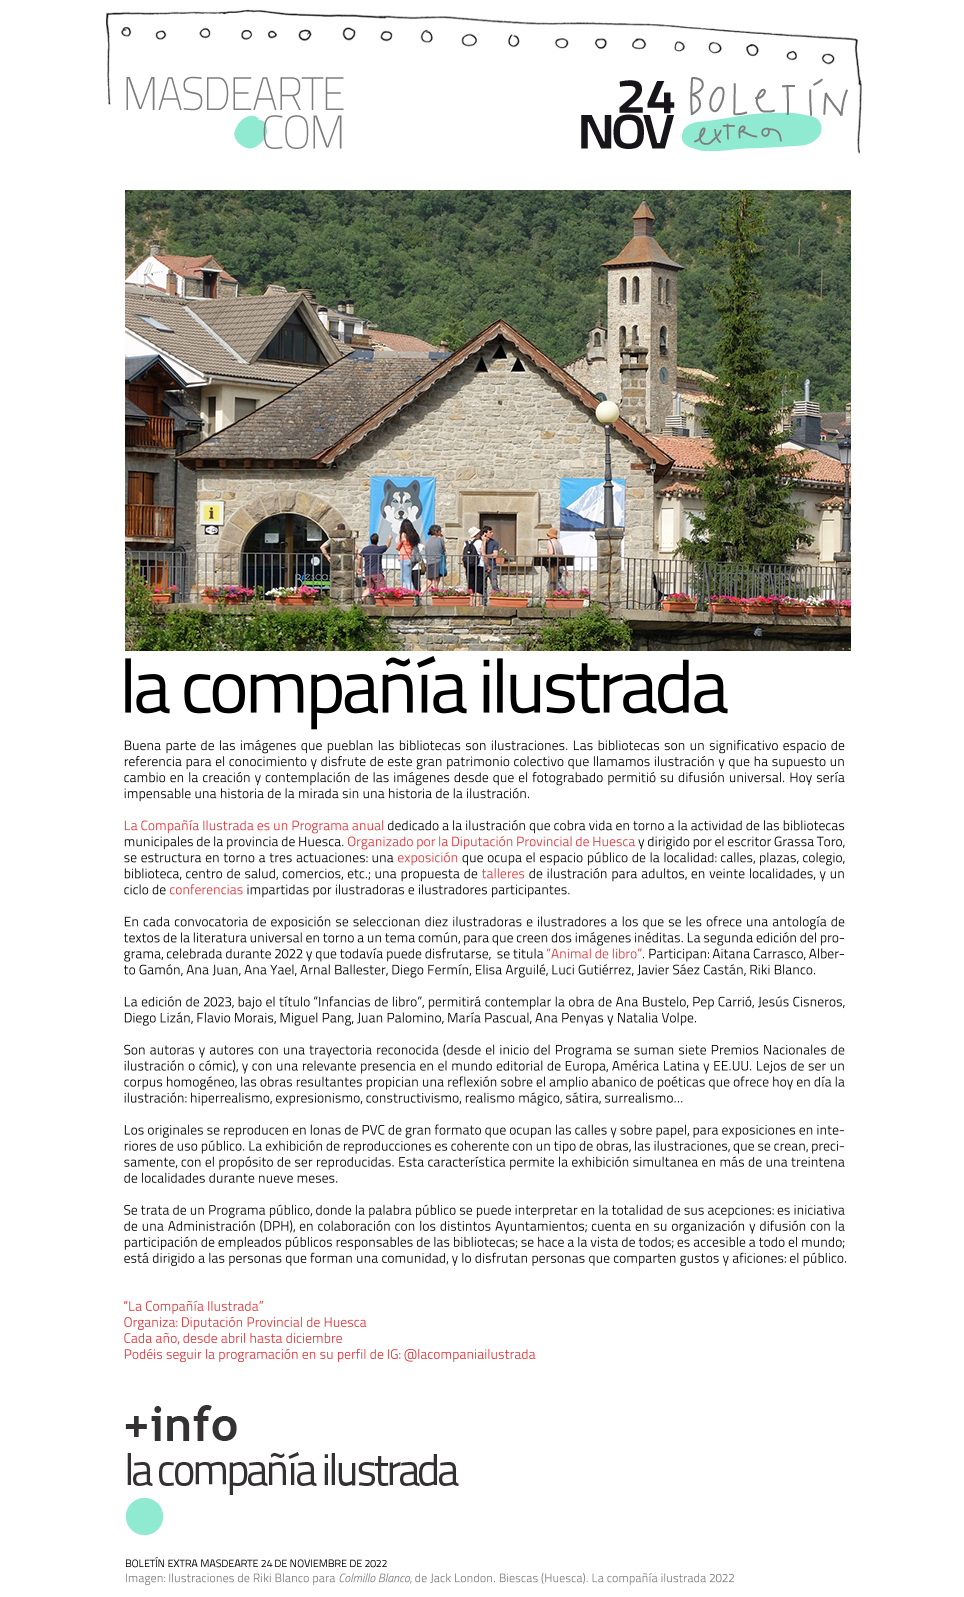 La Compañía Ilustrada. Un programa de la Diputación Provincial de Huesca